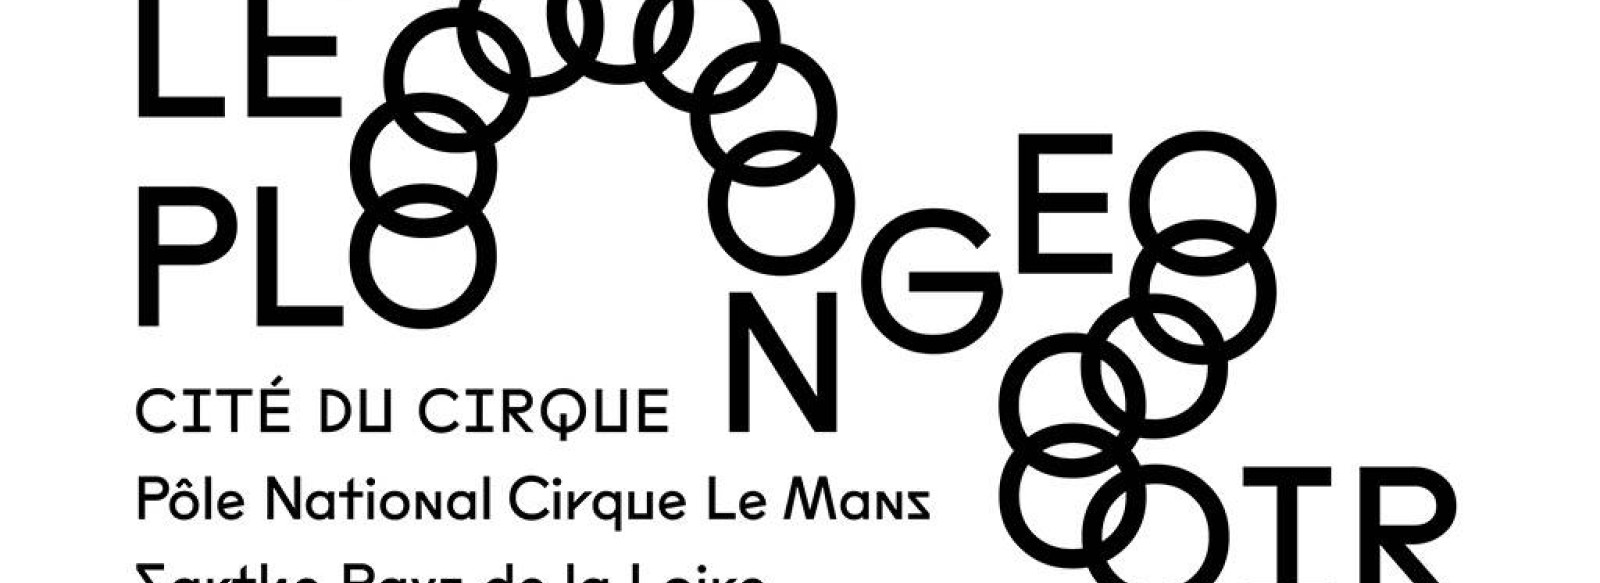 Stage Aériens : sangles, corde, tissu  Le Plongeoir, Pôle national Cirque  Le Mans